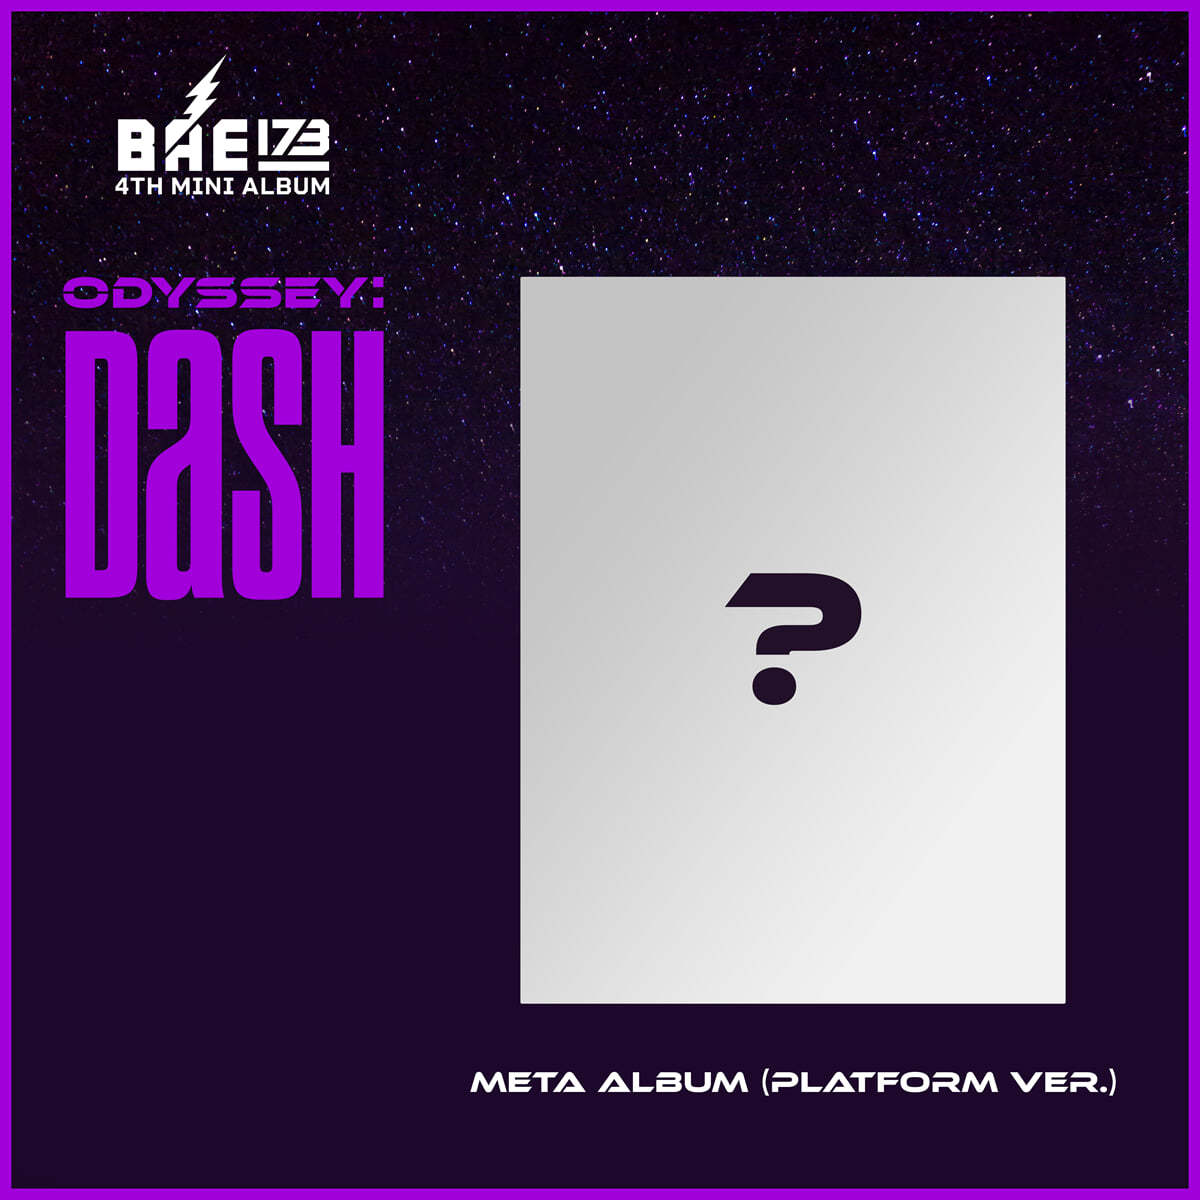 비에이이일칠삼 (BAE173) - 미니앨범 4집 : ODYSSEY : DaSH (Platform Ver.)